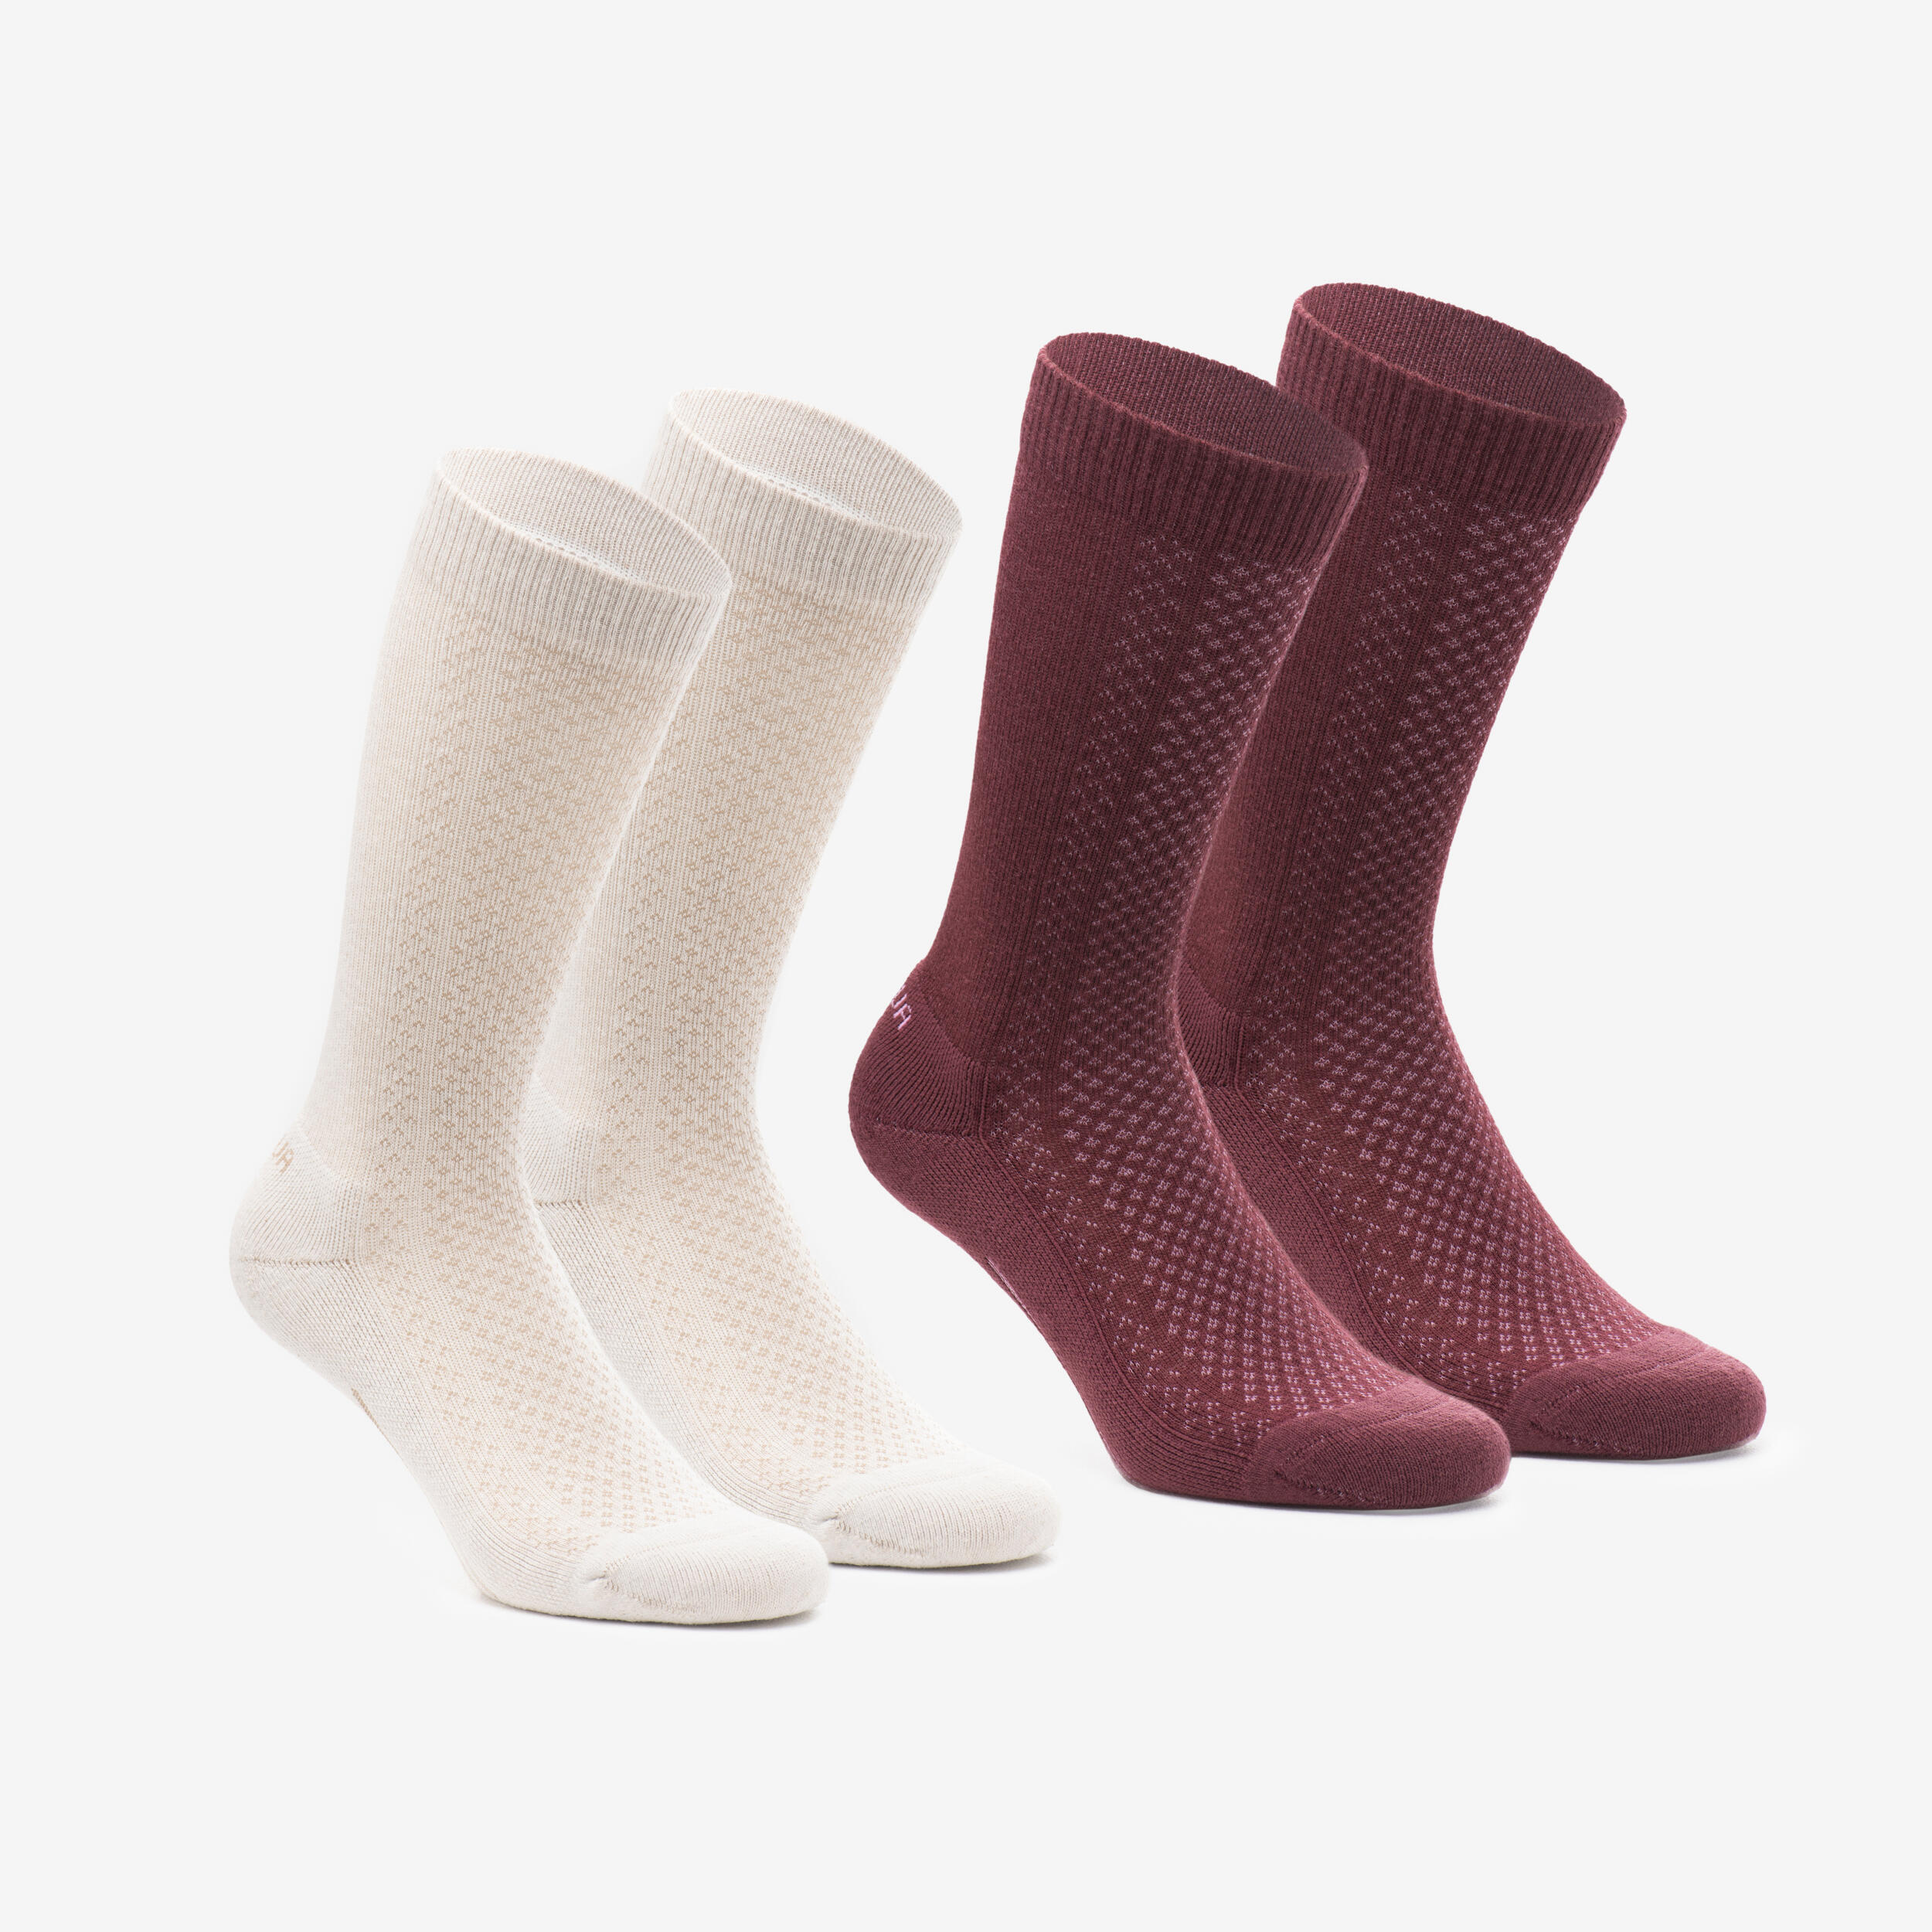 Hike 100 High Socks  - Beige Burgundy-Lyocell& Linen-Pack of 2 pairs 1/11